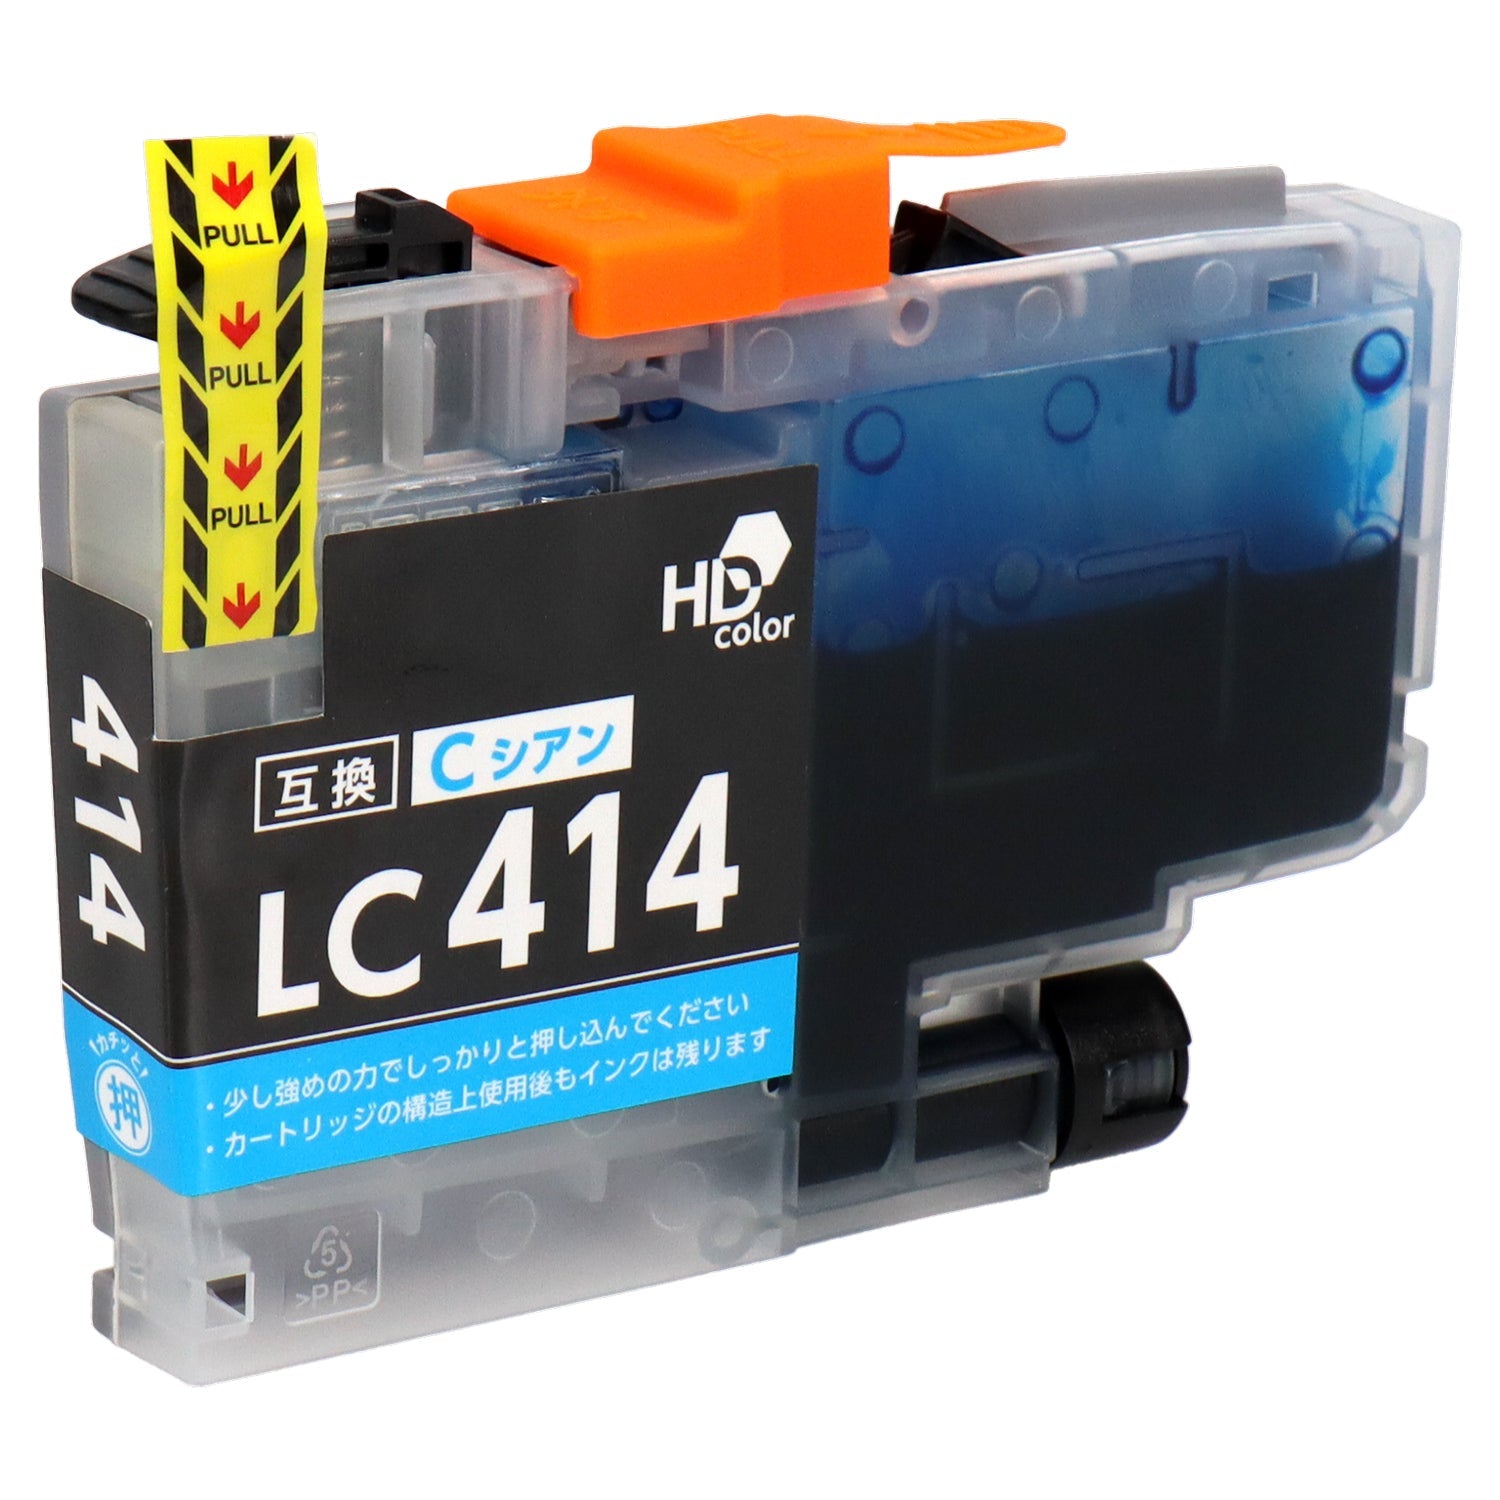 ブラザー用 LC414-4PK 互換インク 4色セット シリアルなし